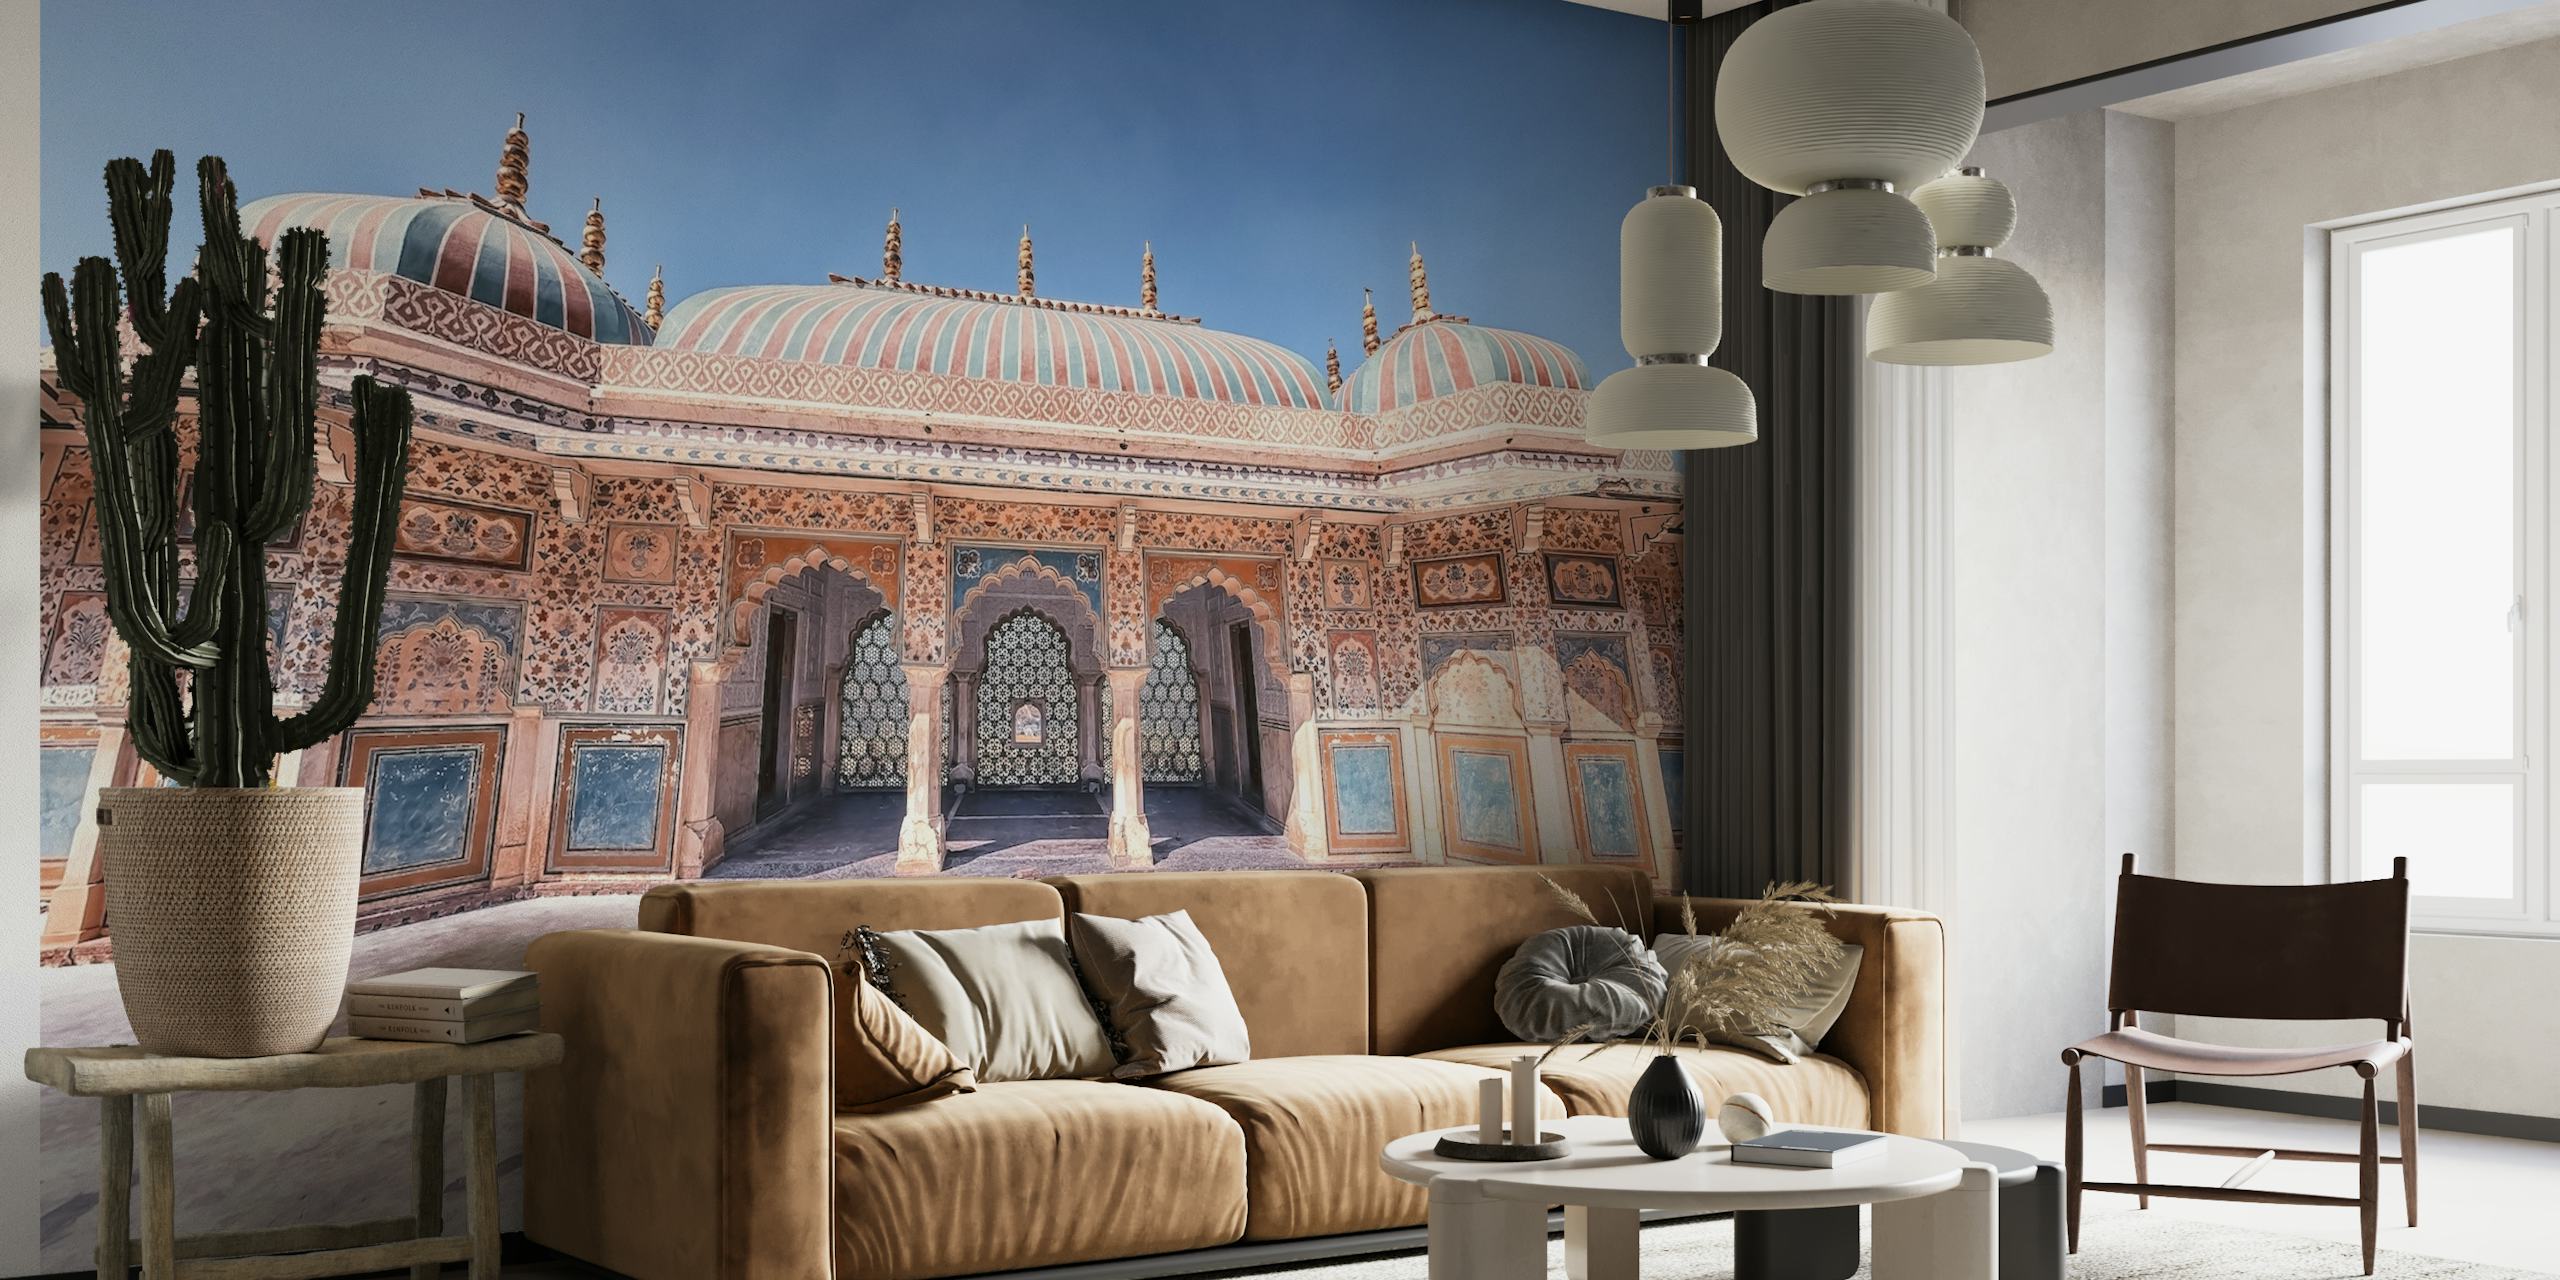 Amber Fort muurschildering met de majestueuze Indiase architectuur en ingewikkelde paleisdetails